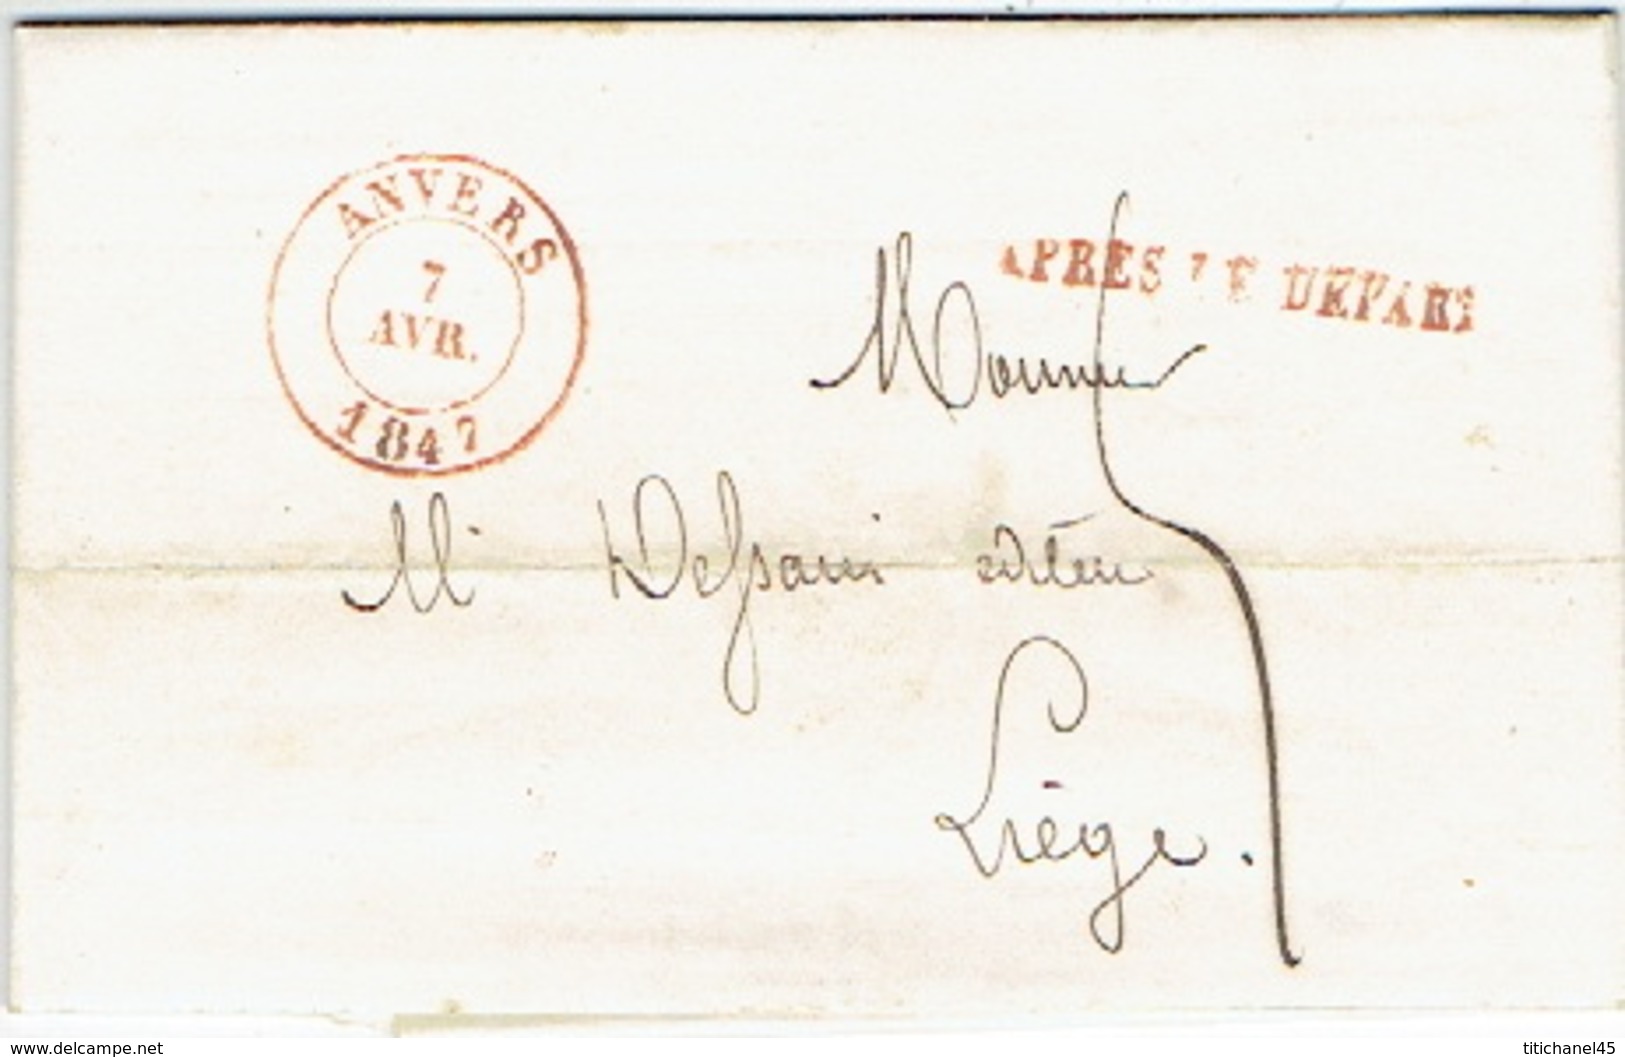 LAC D'ANVERS Datée Du 15 Juin 1847 Vers LIEGE + Griffe "APRES LE DEPART" - Lettre Signée M. ANCELLE - 1830-1849 (Belgica Independiente)